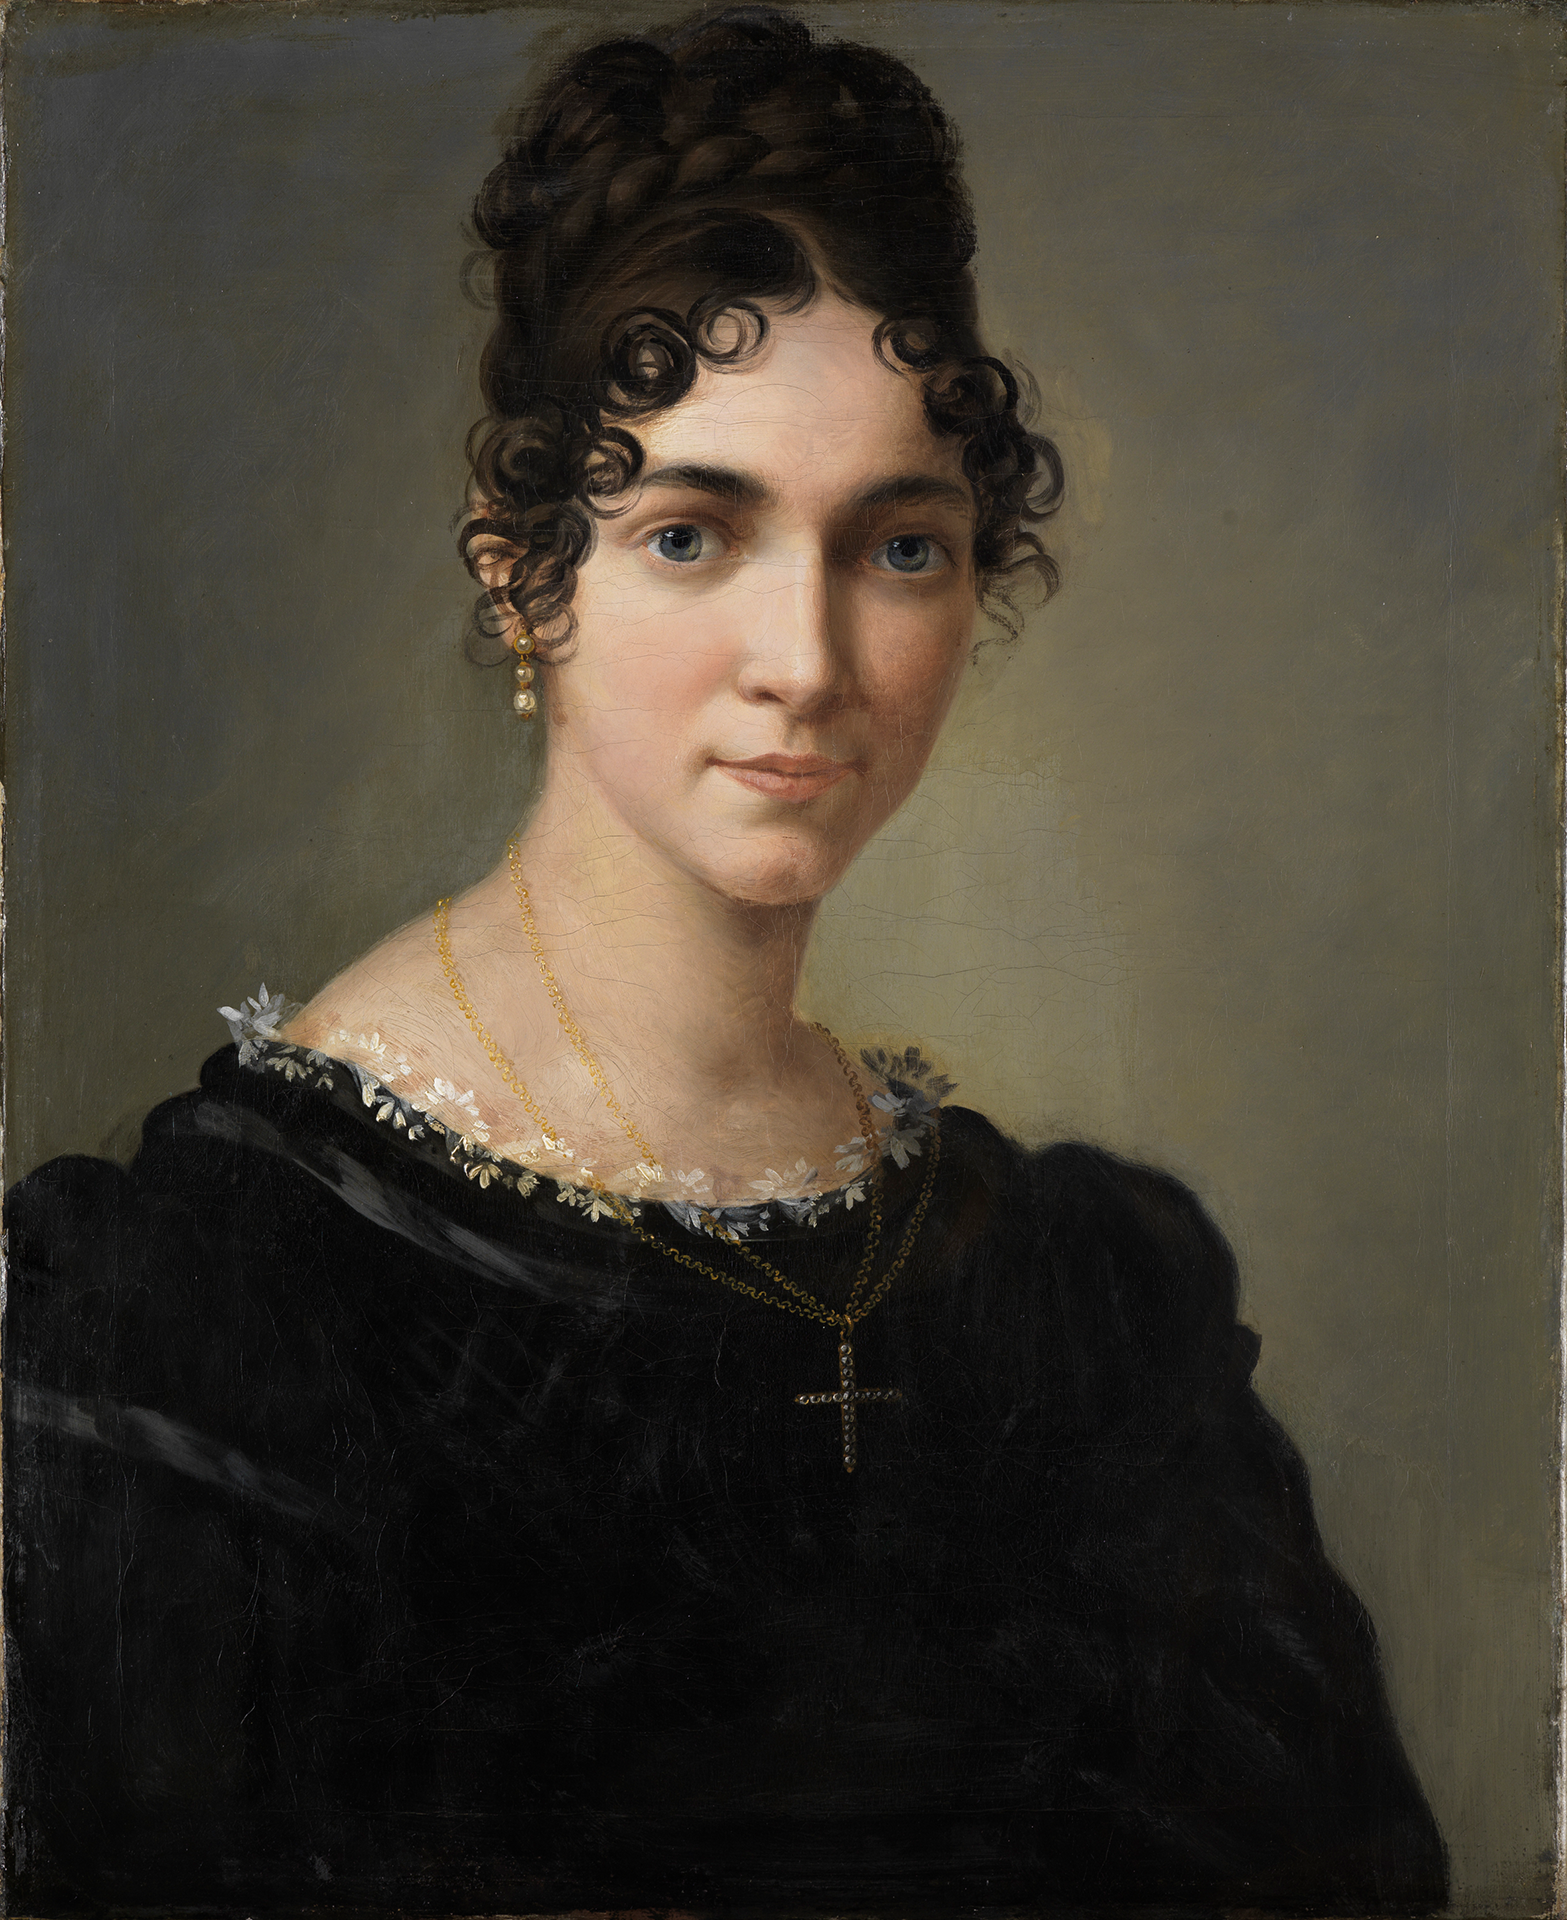 Selbstporträt Marie Ellenrieders, auf dem eine in schwarz gekleidete Frau mit dunklem, lockigem Haar zu sehen ist.